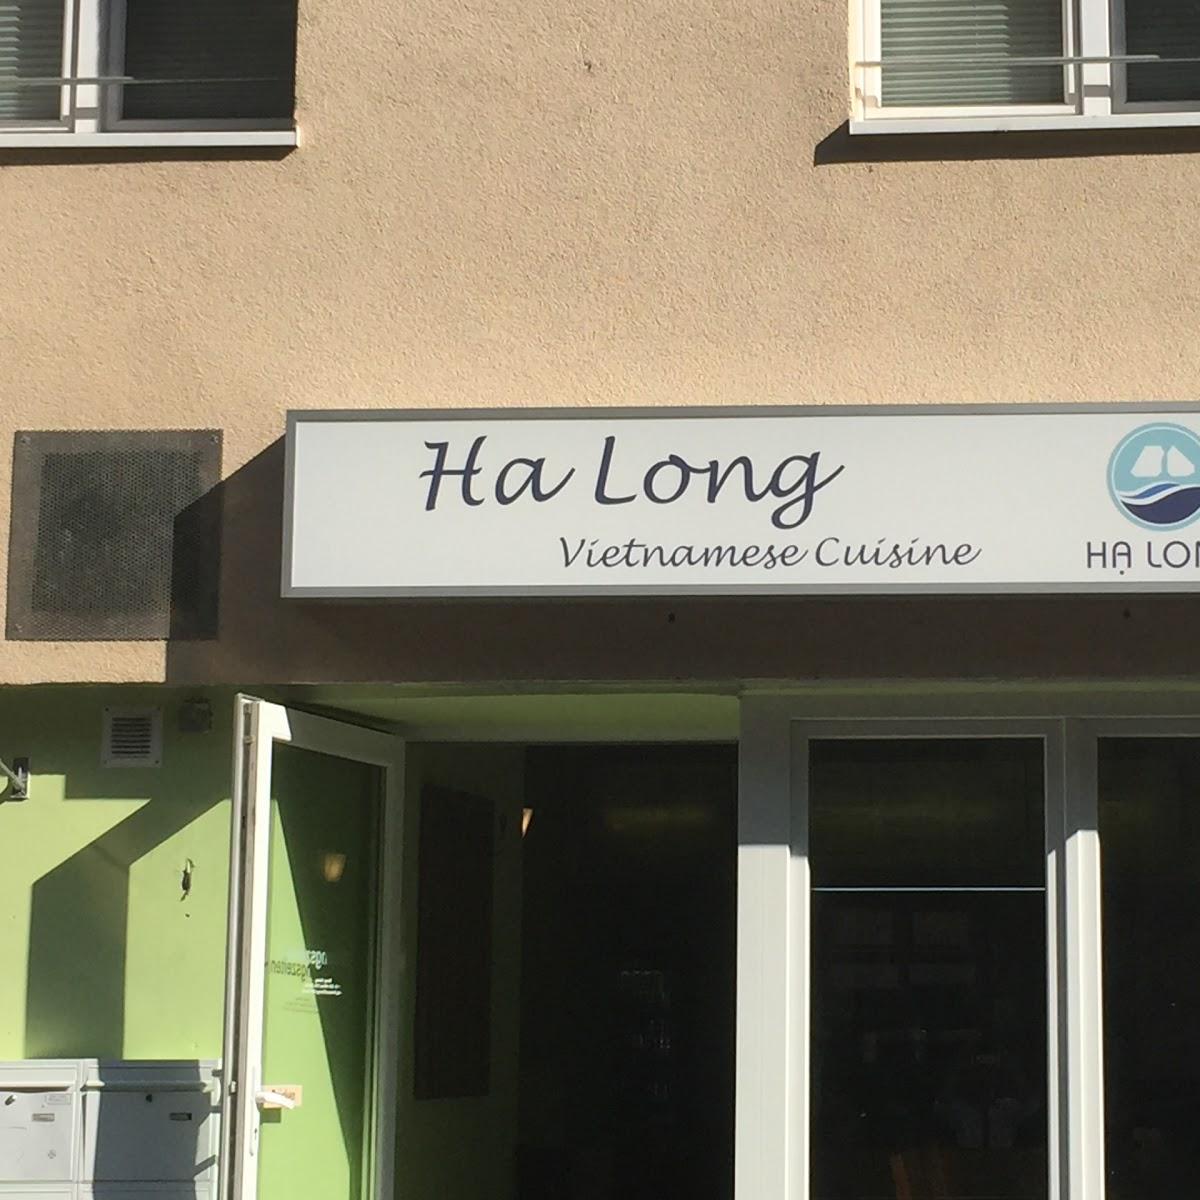 Restaurant "Ha Long - Vietnamese Cuisine" in Mainz